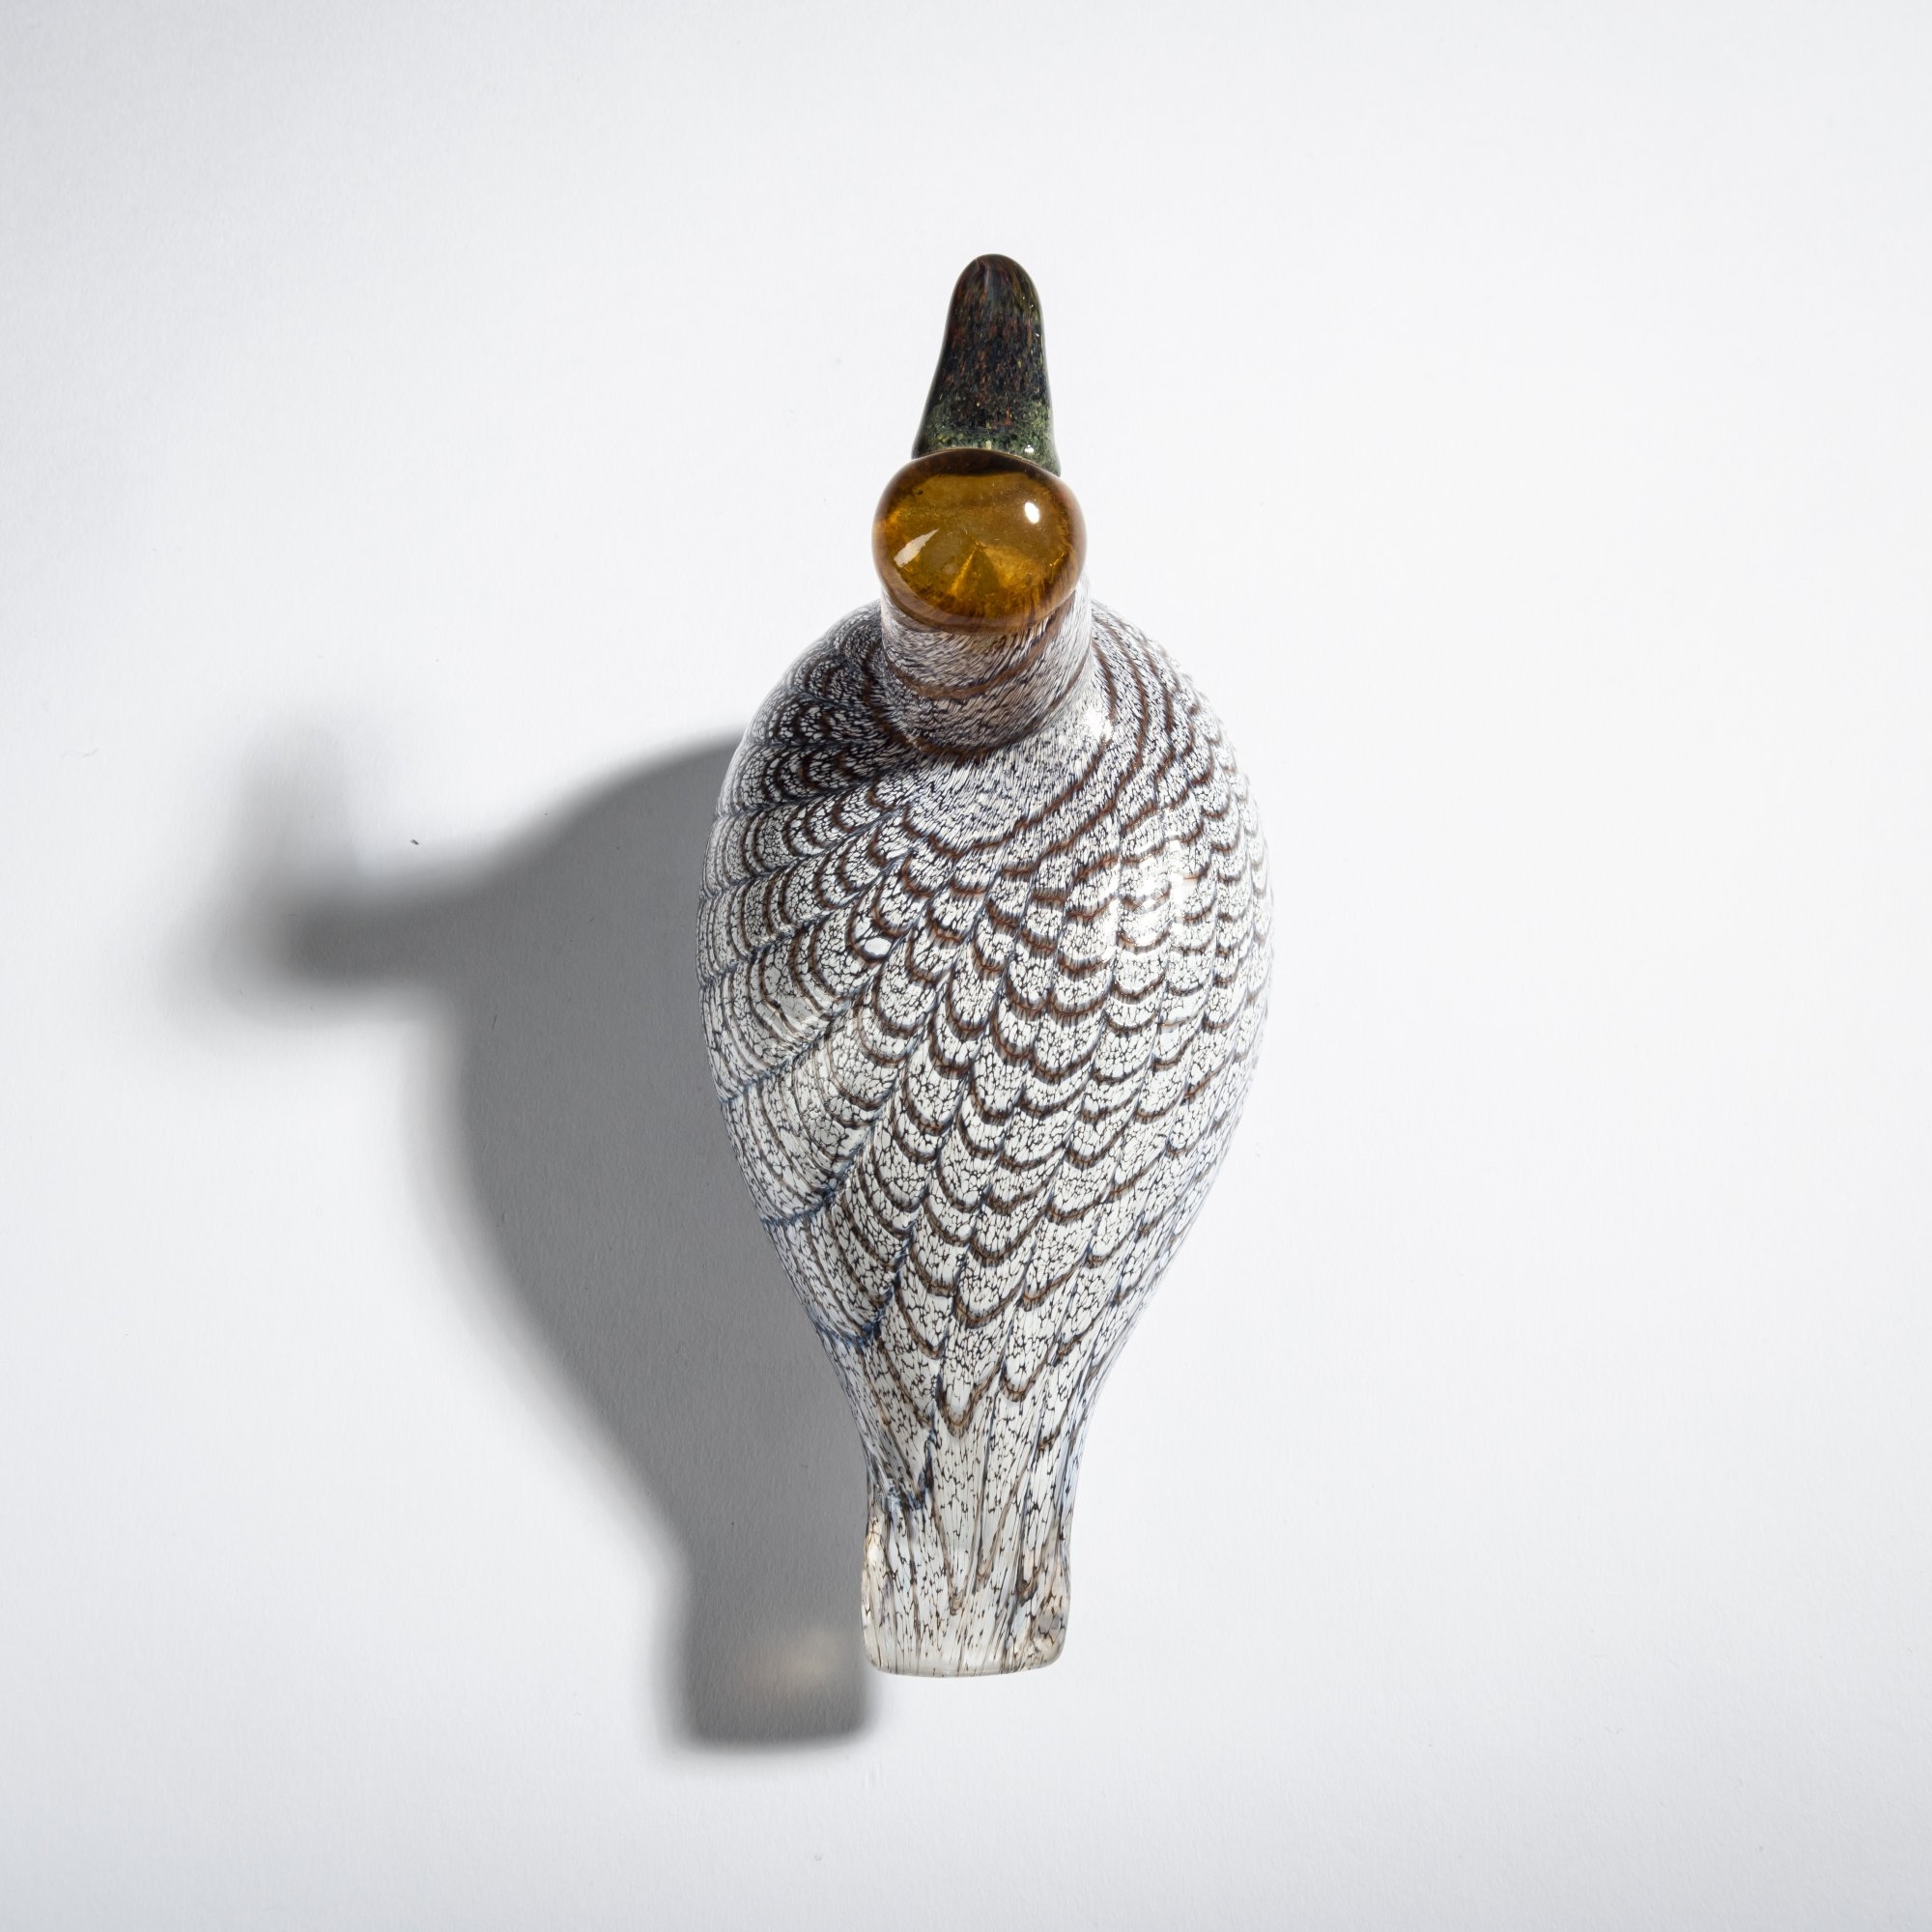 Artwork by Oiva Toikka, Pintail duck 'Jouhisorsa', Made of Cased glass